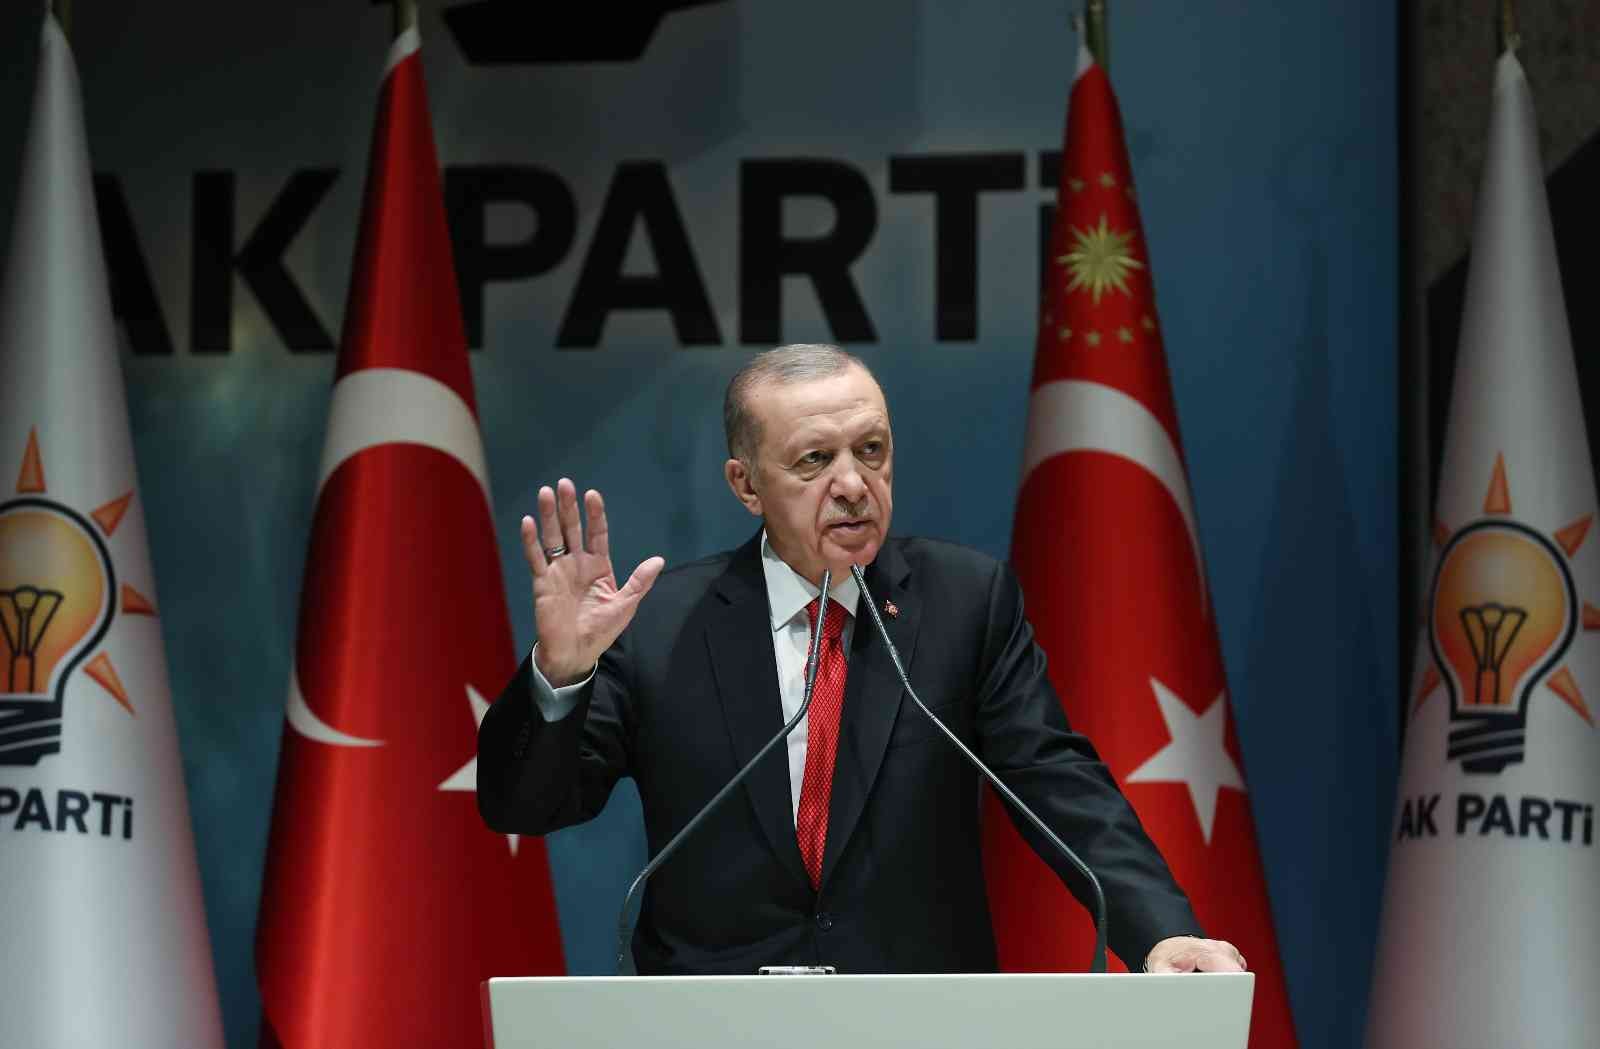 Cumhurbaşkanı Erdoğan: Marketlerin denetimini sıkılaştırıp fiyat farklılıklarını gidereceğiz